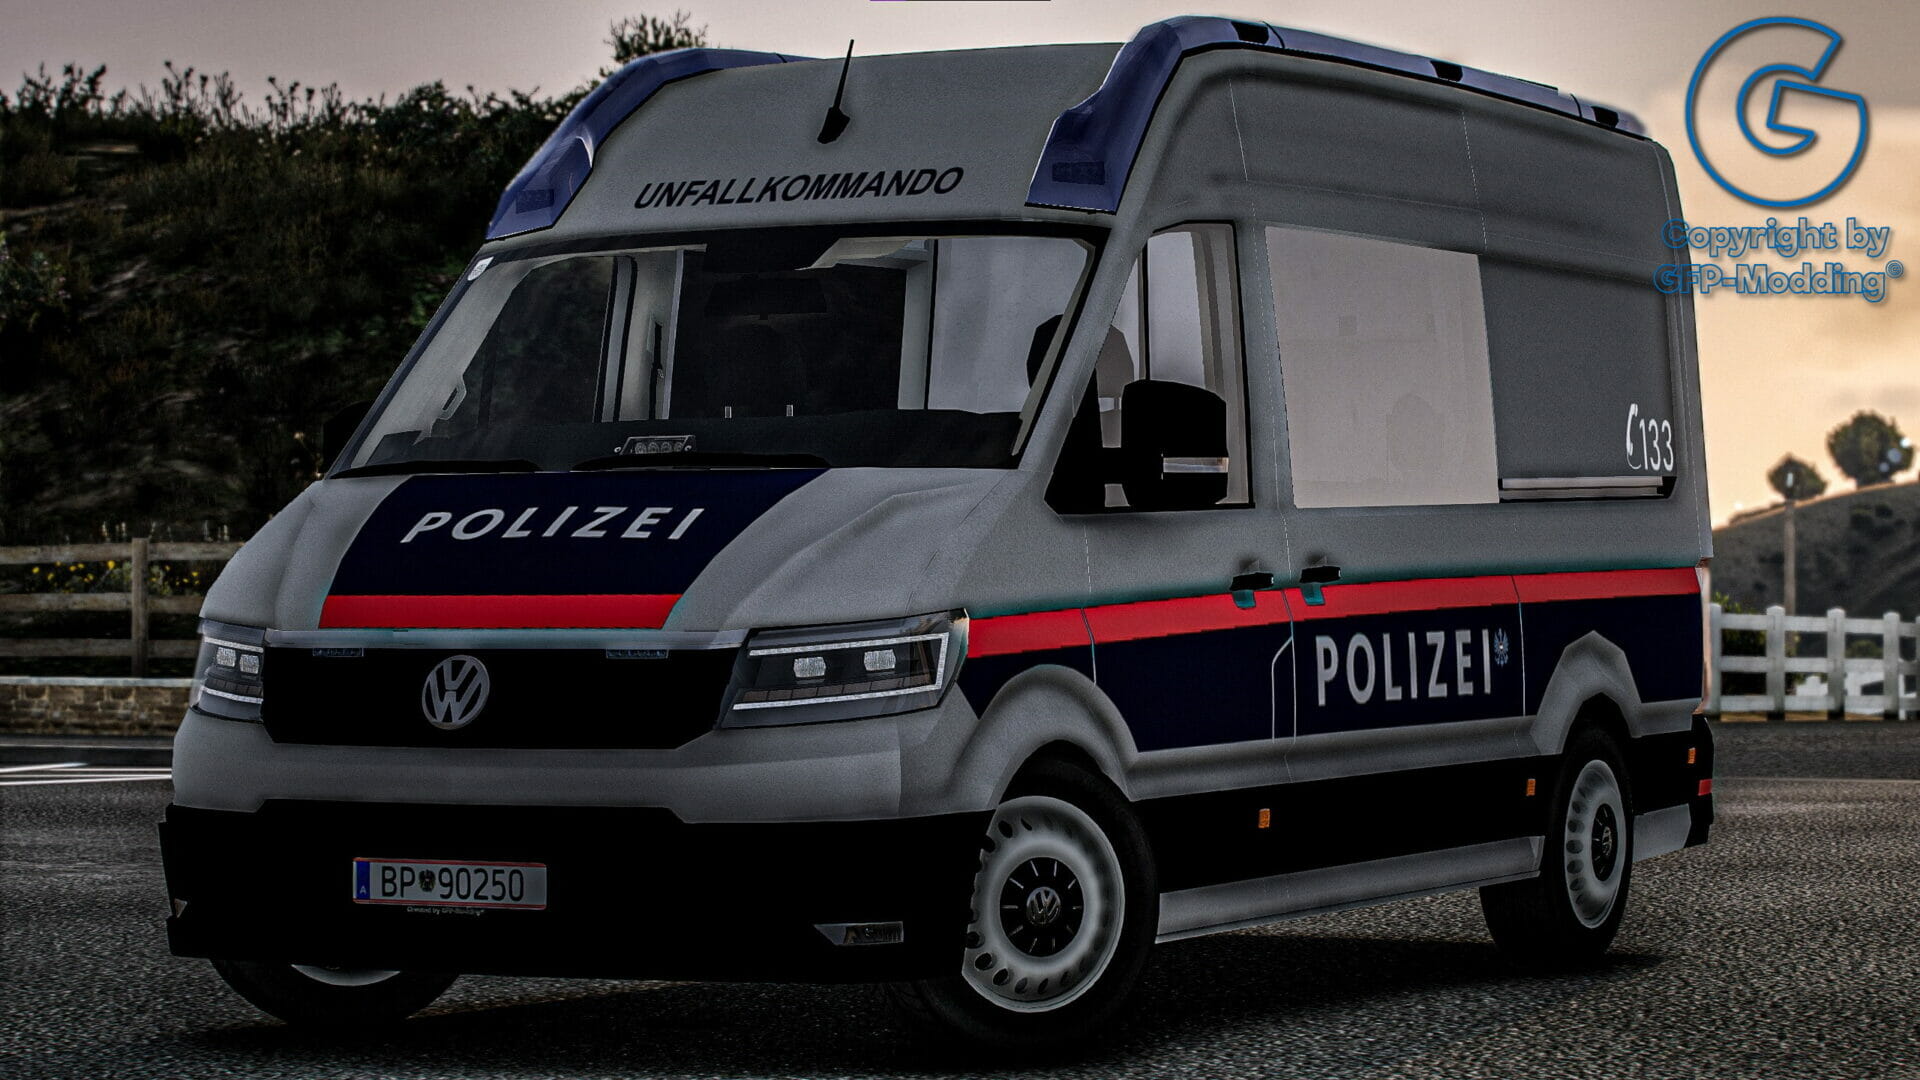 Volkswagen Crafter Verkehrsunfallkommando Polizei Österreich [ELS] [REFLECTION]